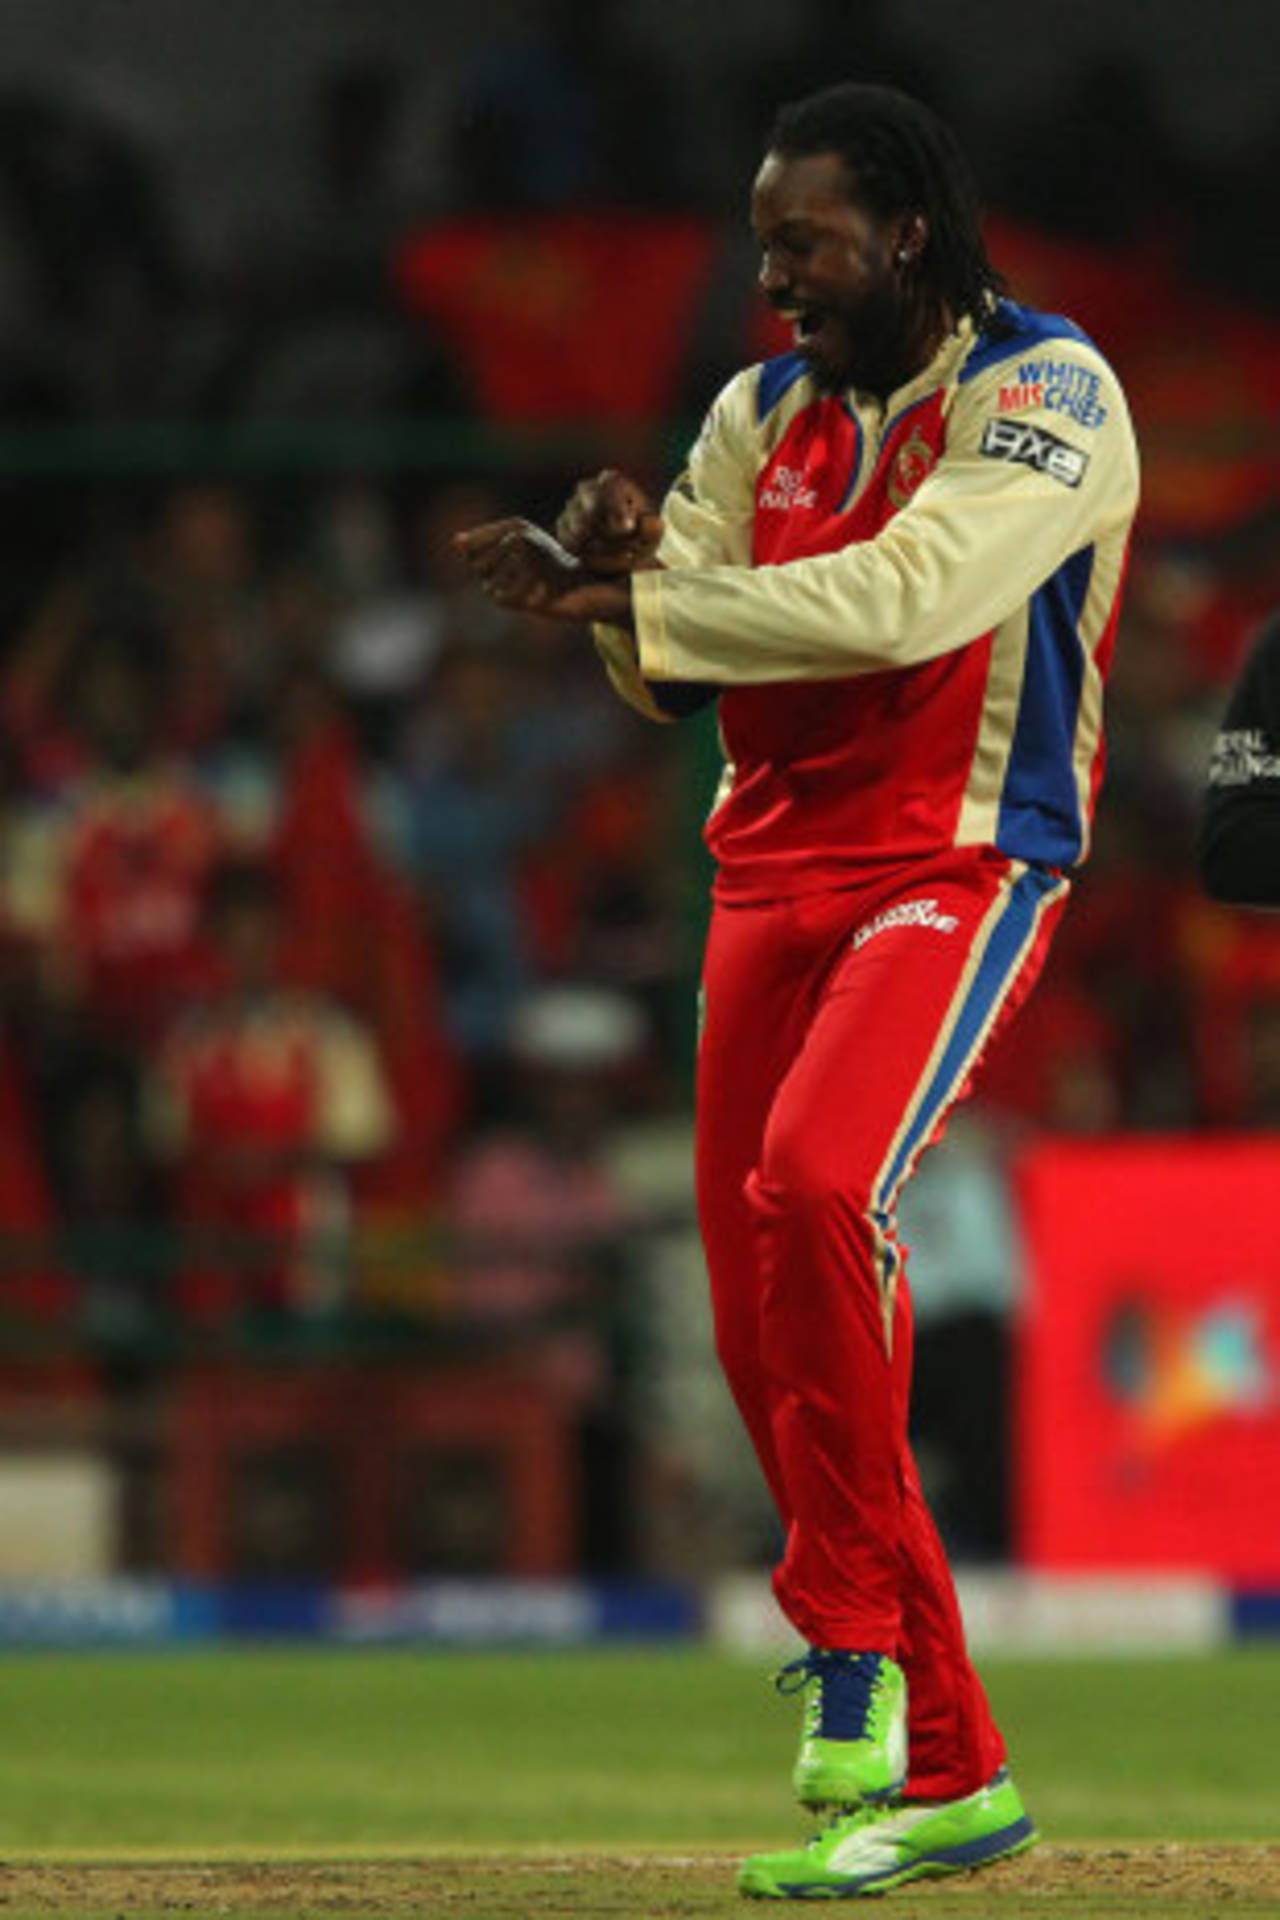 Chris Gayle celebrates a wicket with <i>Gangnam Style</i>, Royal Challengers Bangalore v Pune Warriors, IPL, Bangalore, April 23, 2013